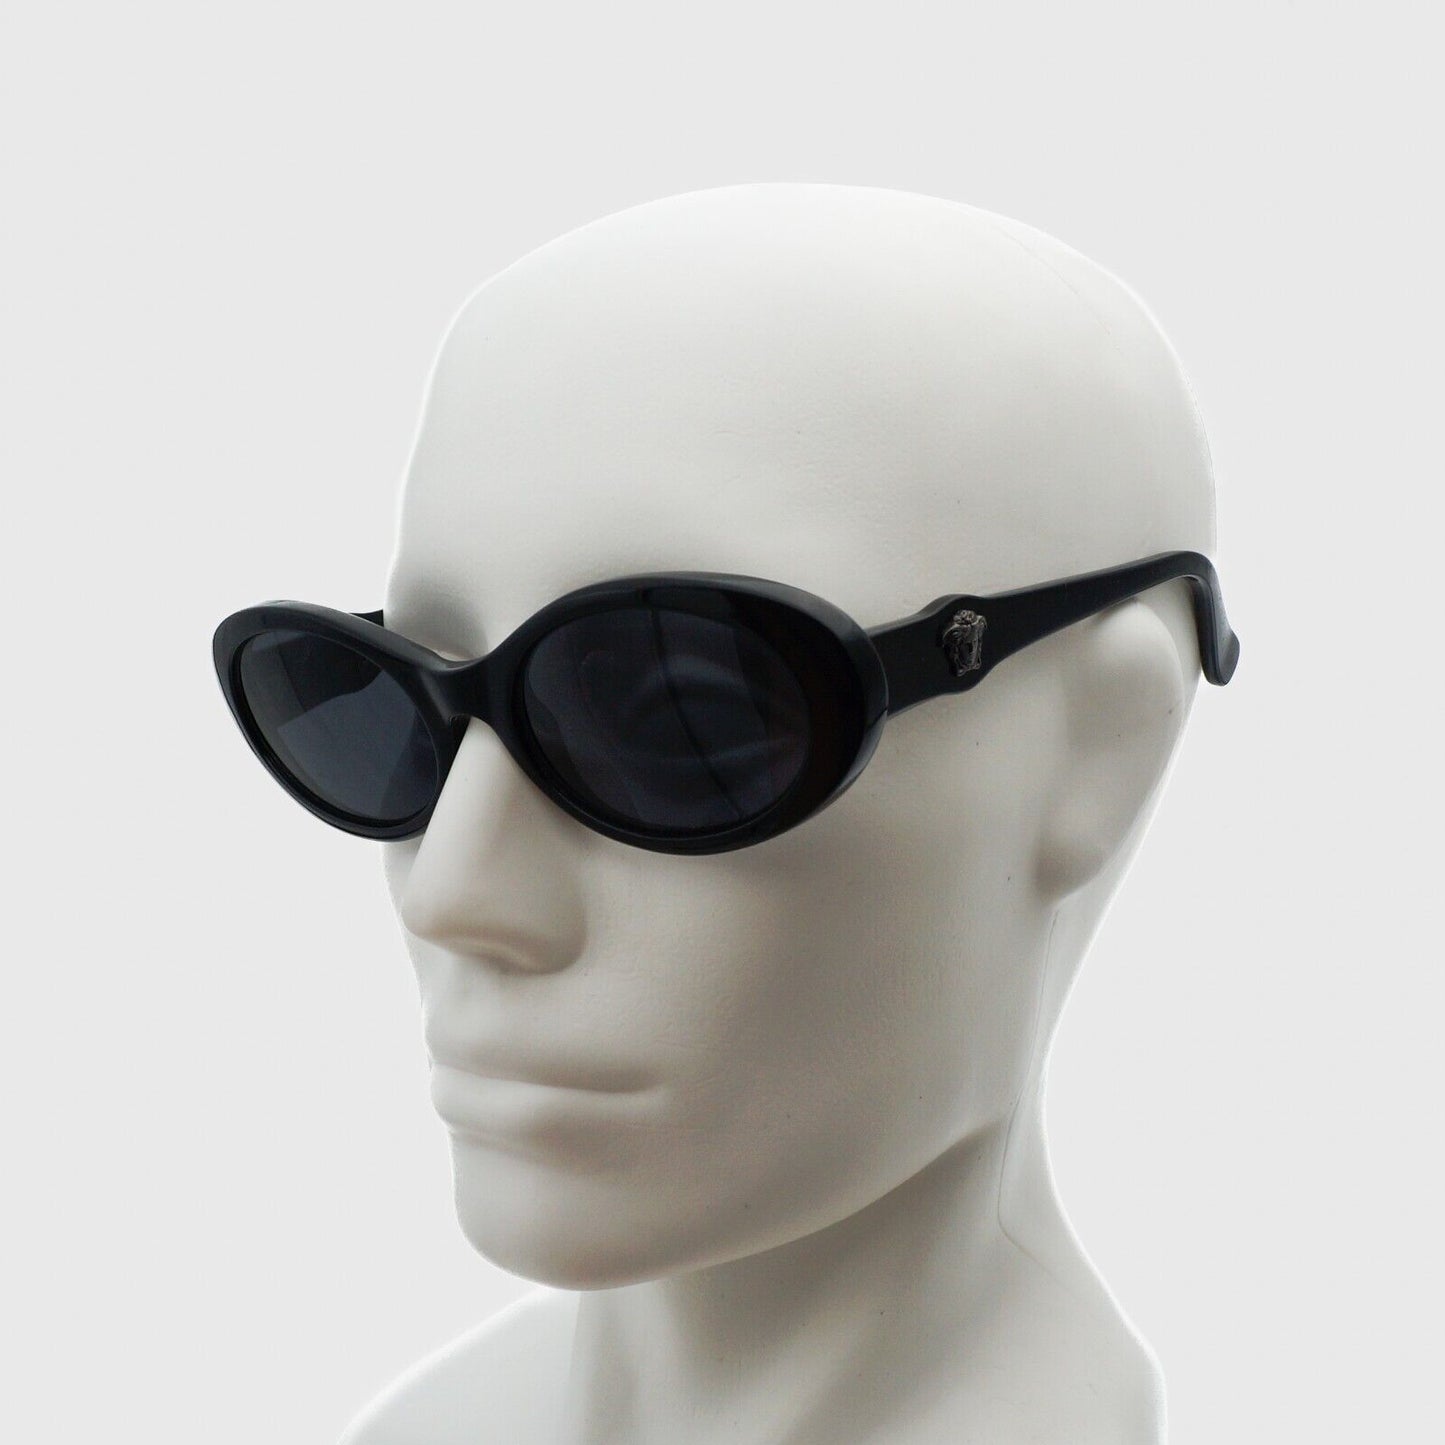 GIANNI VERSACE 342 Medusa Black Oval Sunglasses Vintage 90s